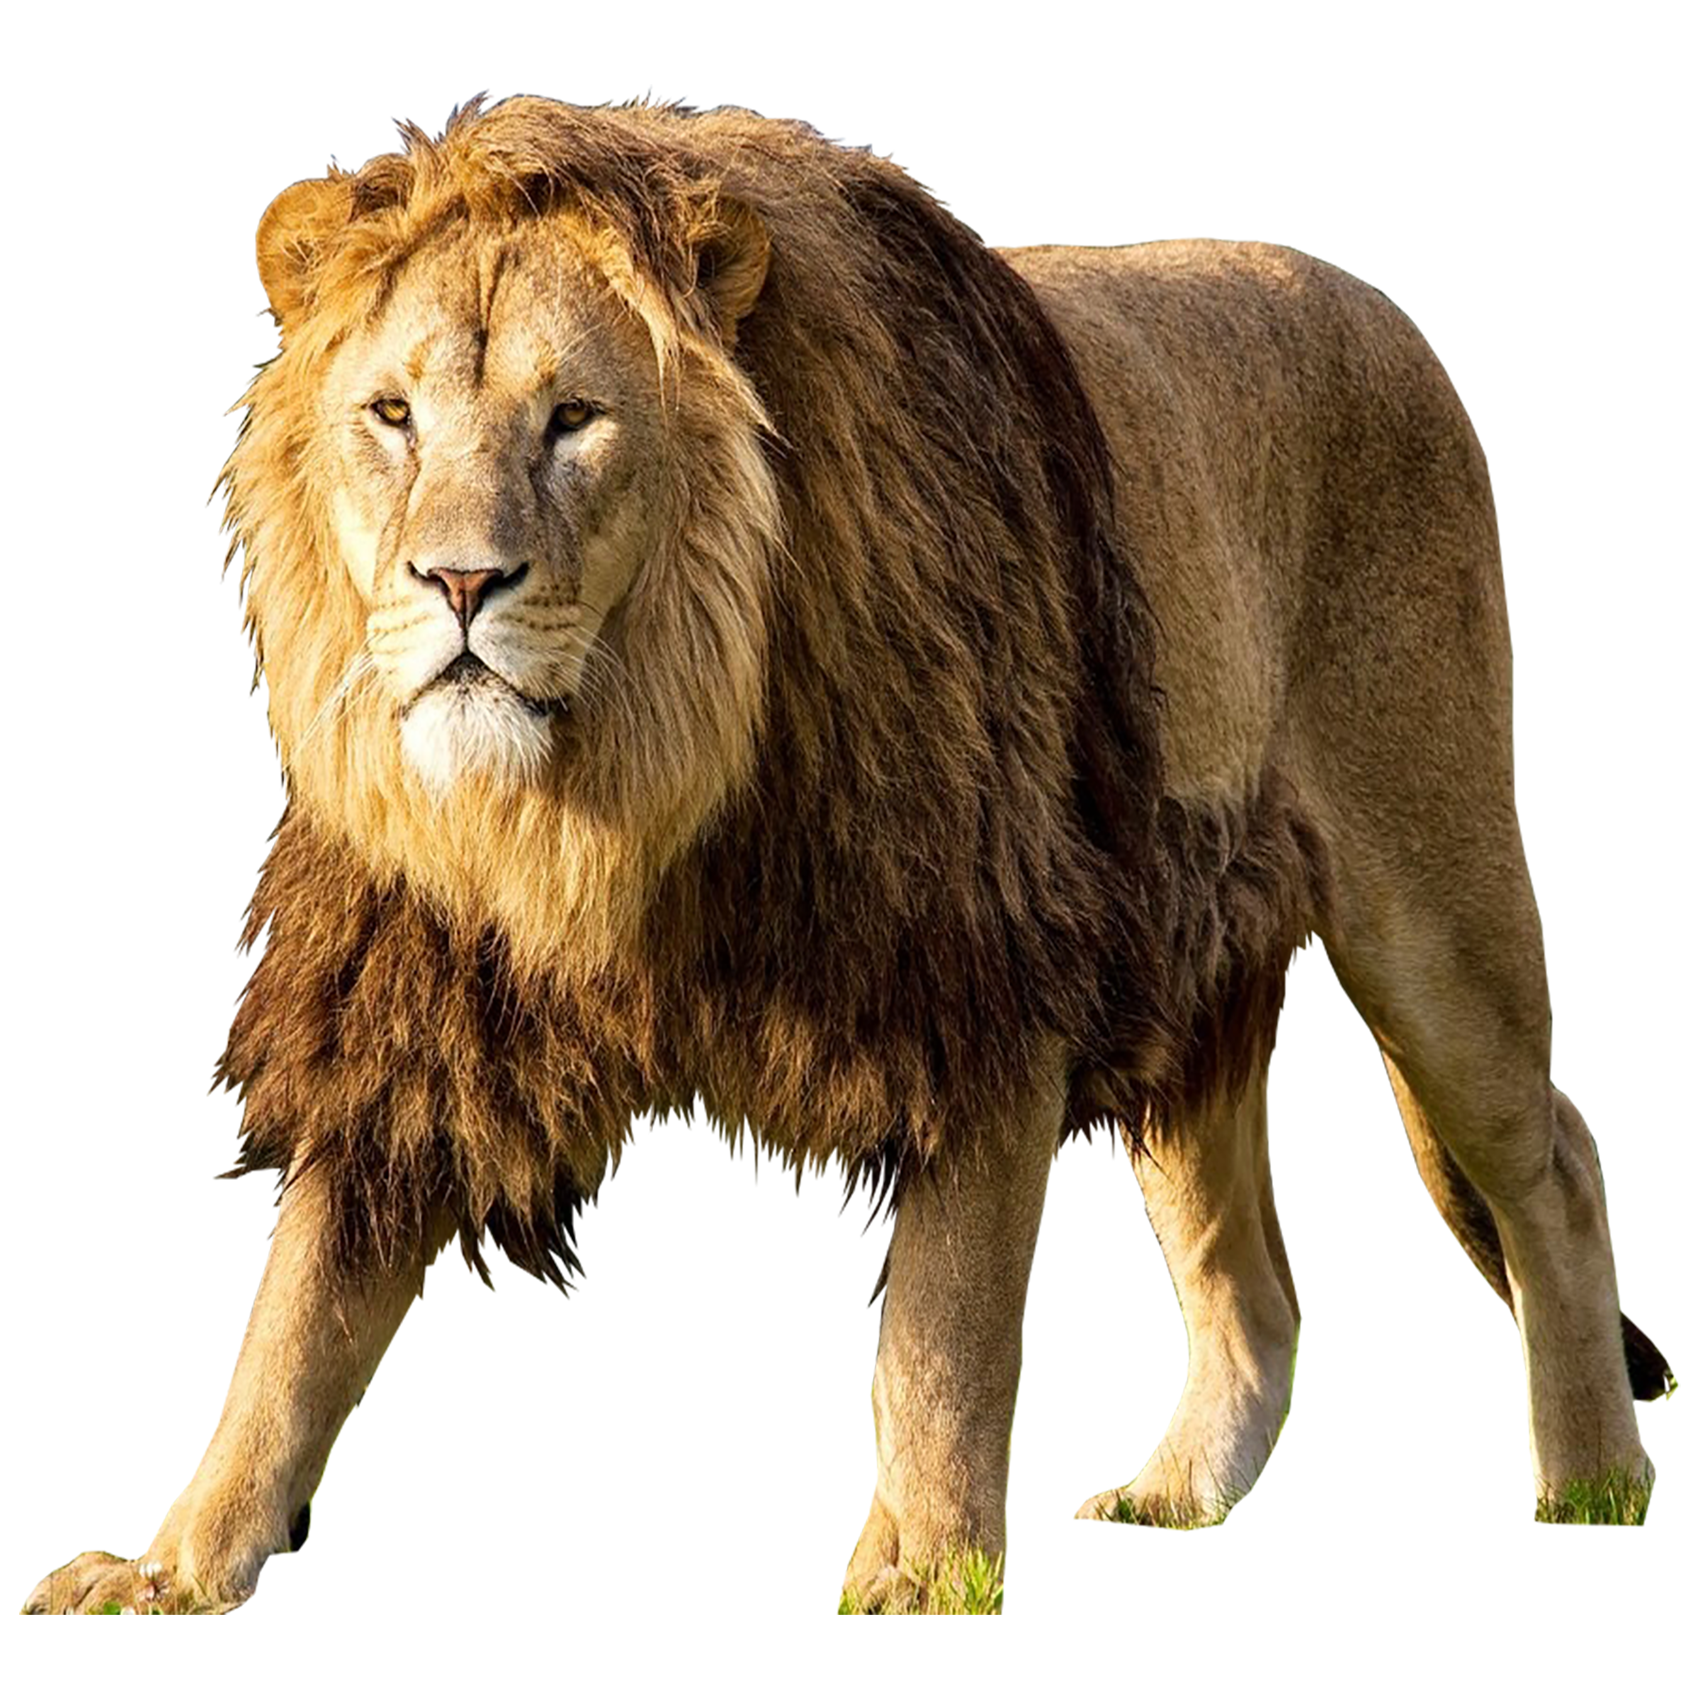 Lion Transparent Image